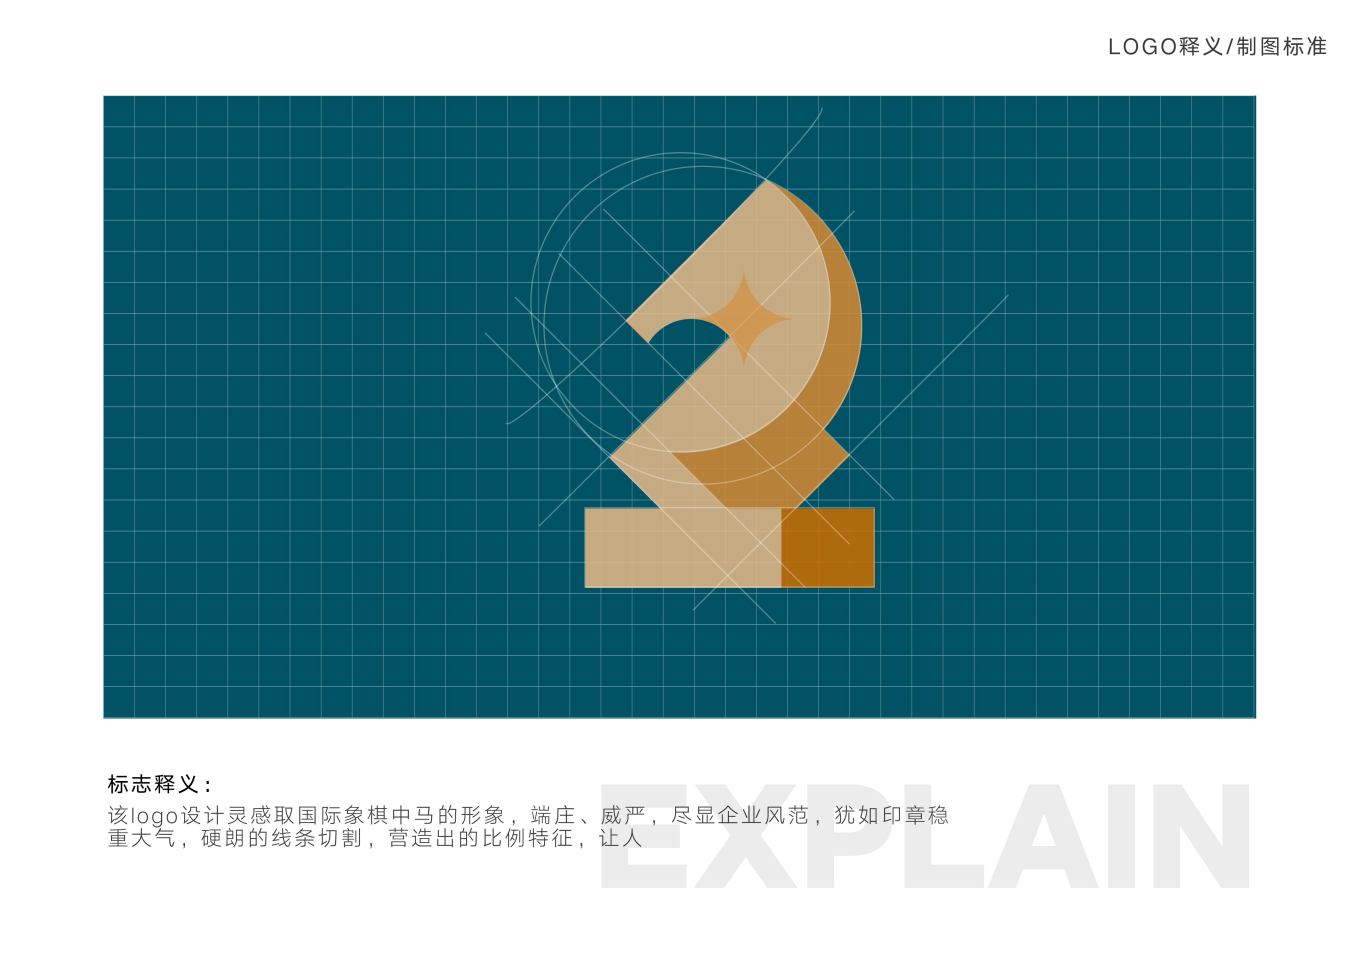 朱骏&任行投资公司logo设计图18